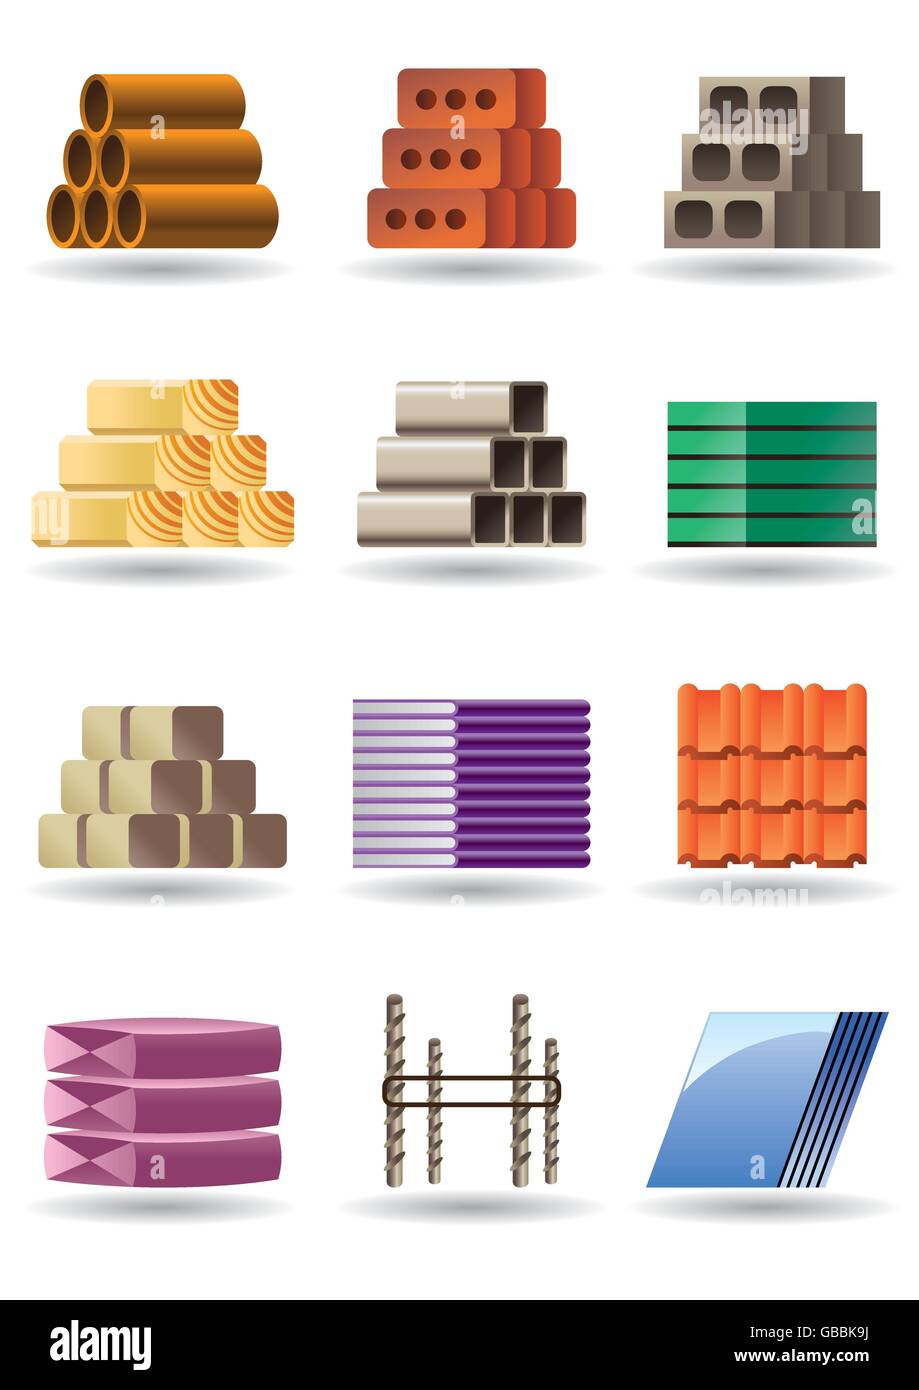 Gebäude und Konstruktionen Materialien - Vektor-illustration Stock Vektor